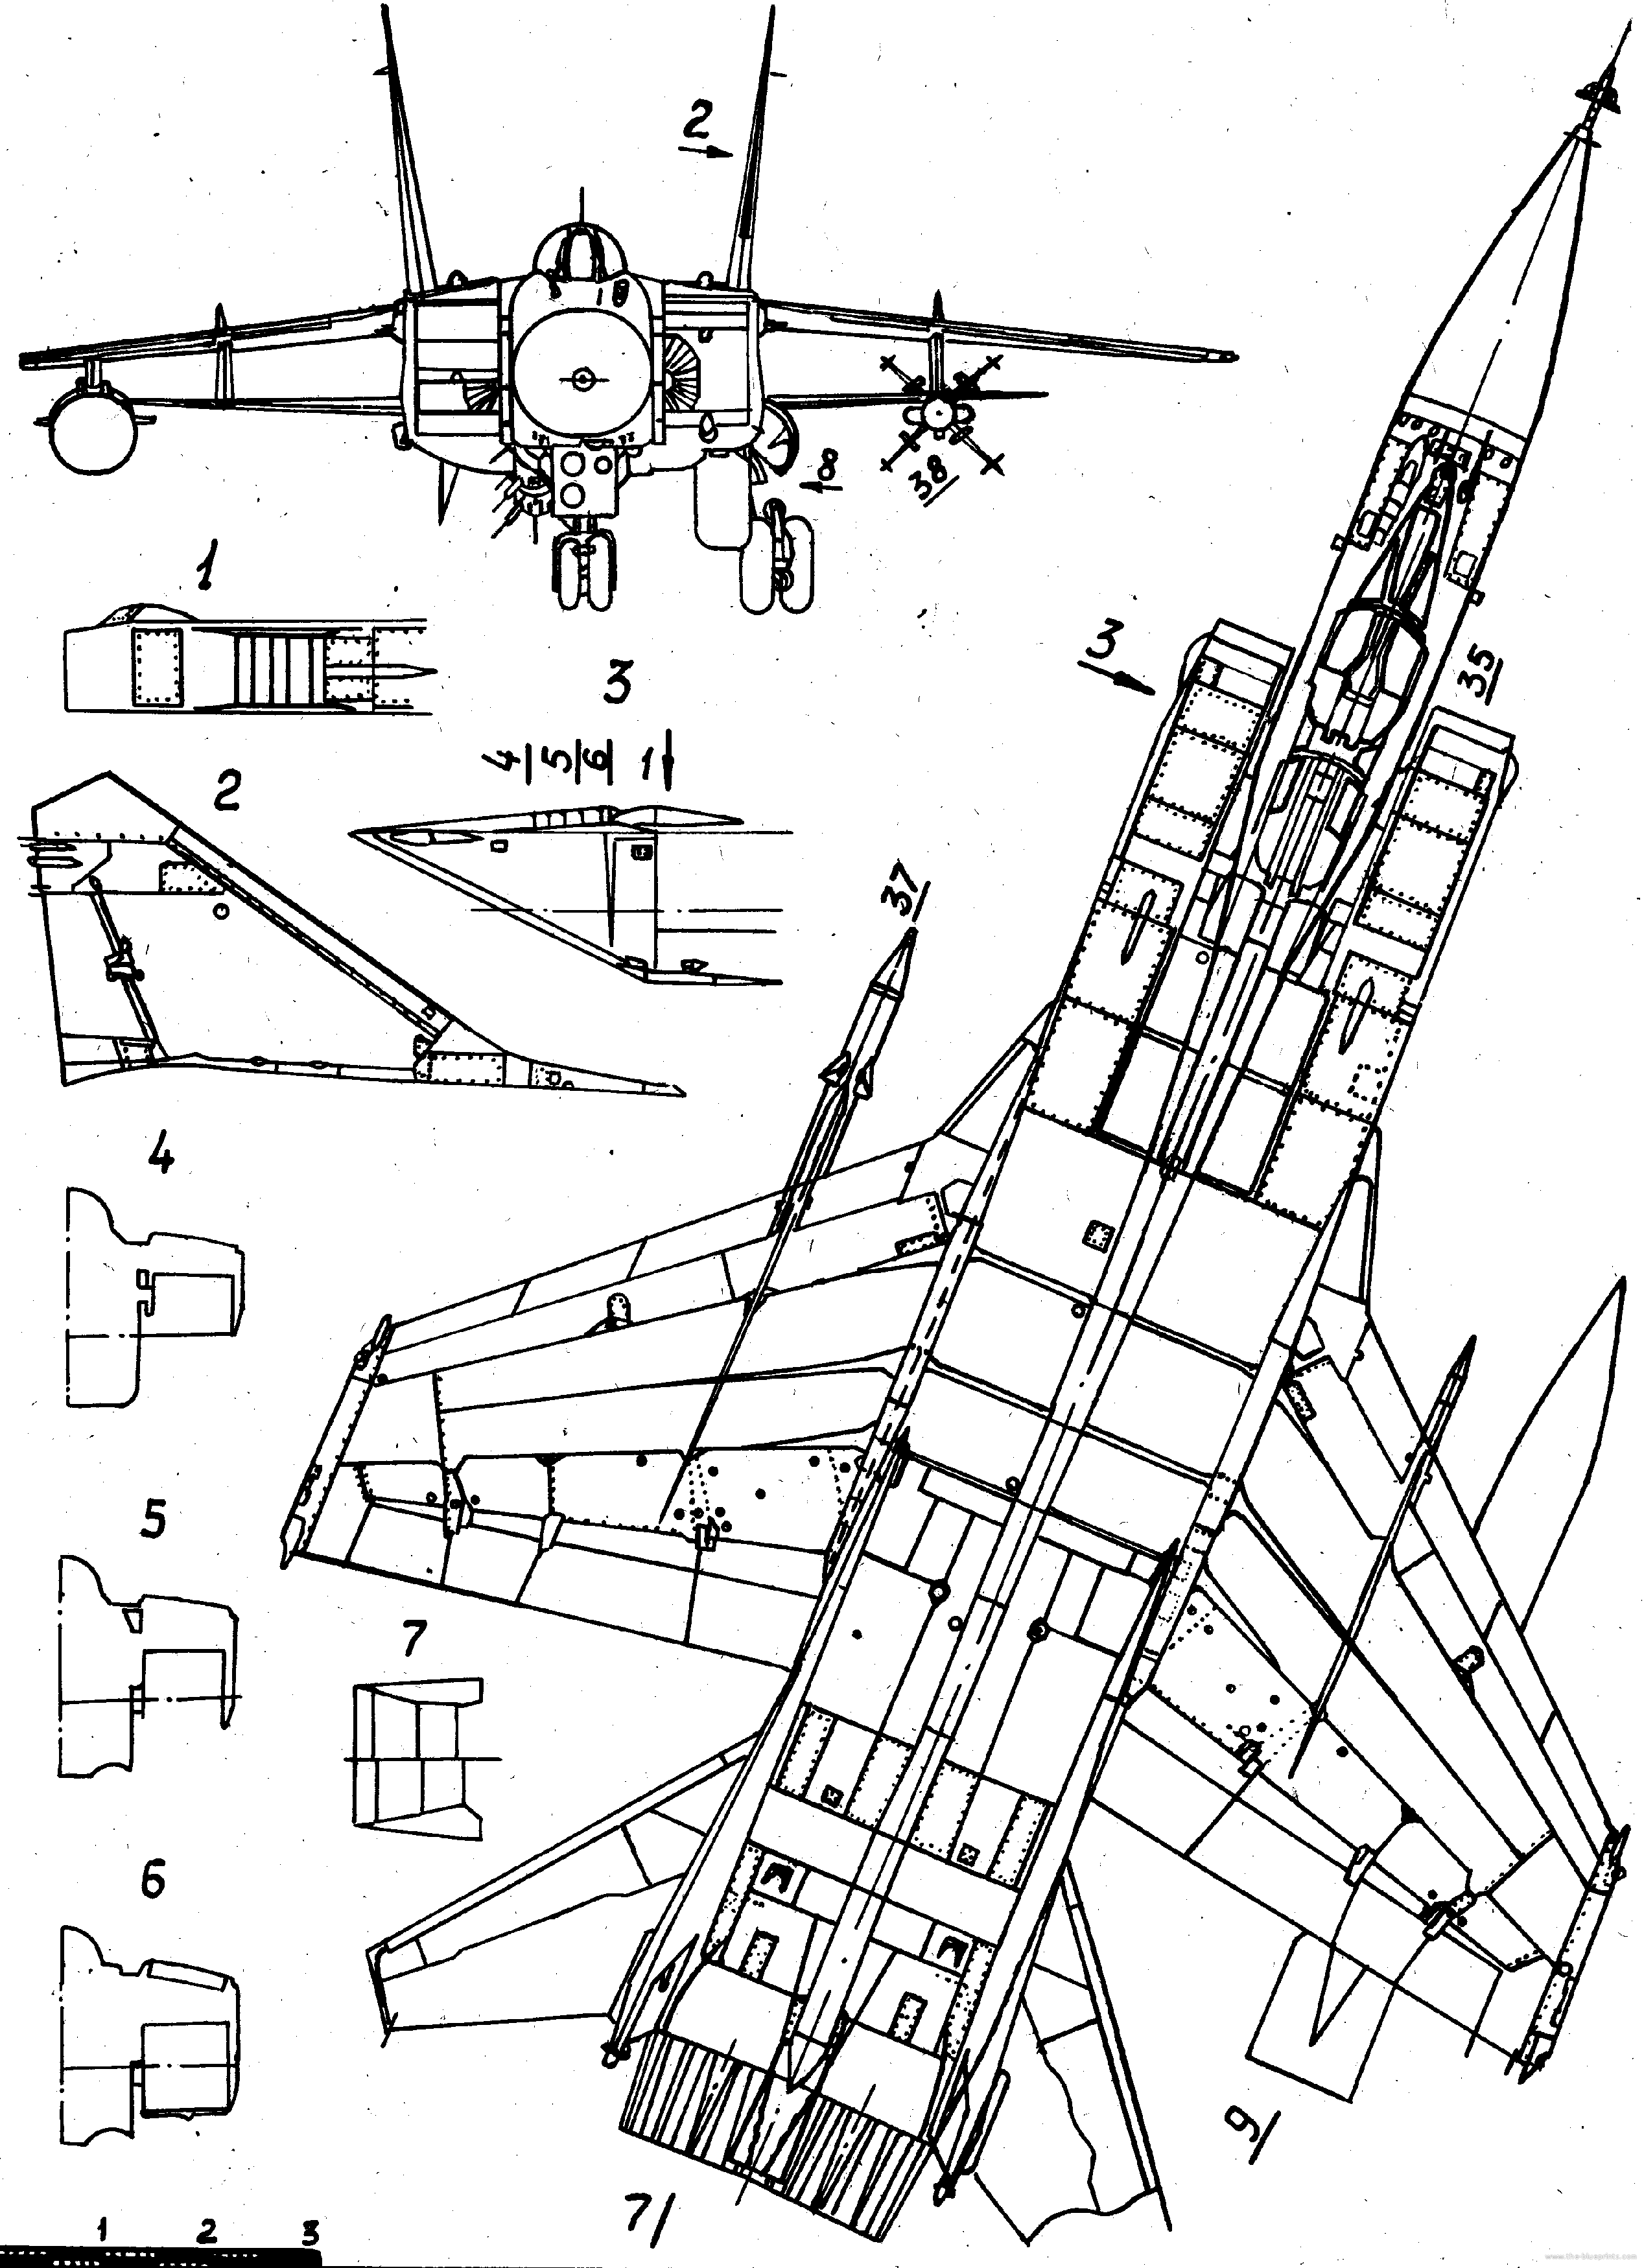 米格-31 战斗机  Mig-31 剖面图 截面图